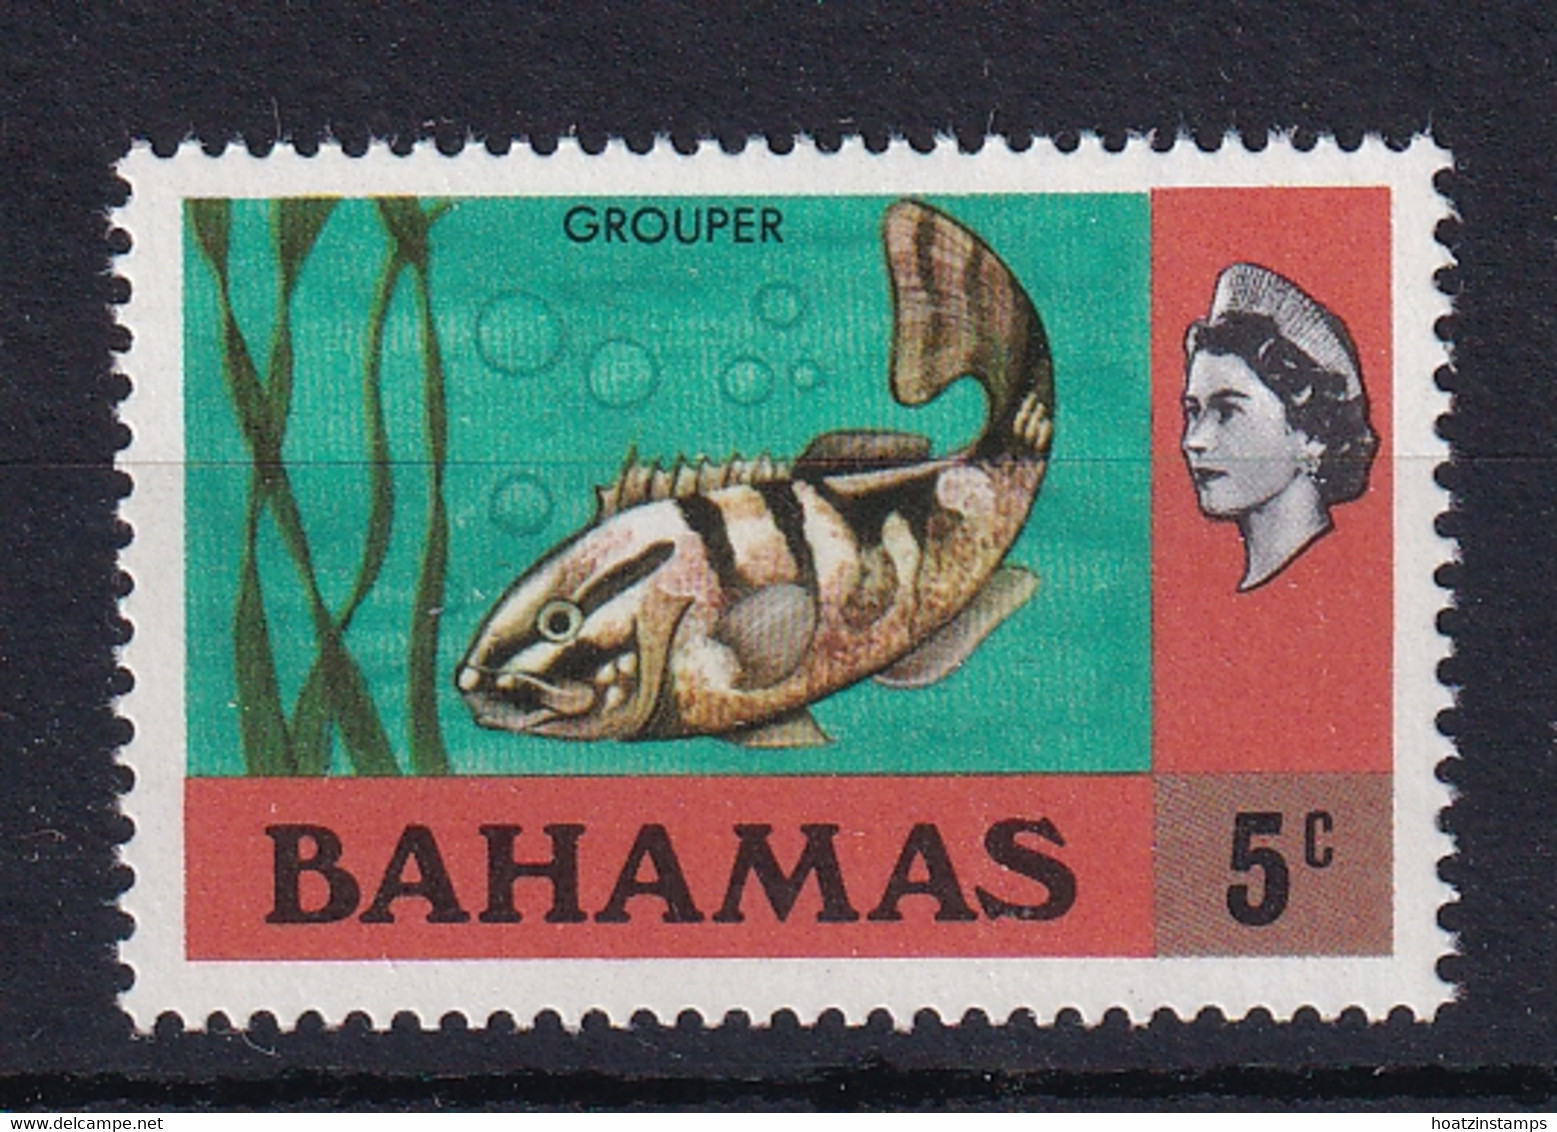 Bahamas: 1972/73   Pictorial   SG395    5c   [Wmk Sideways]  MNH - 1963-1973 Interne Autonomie